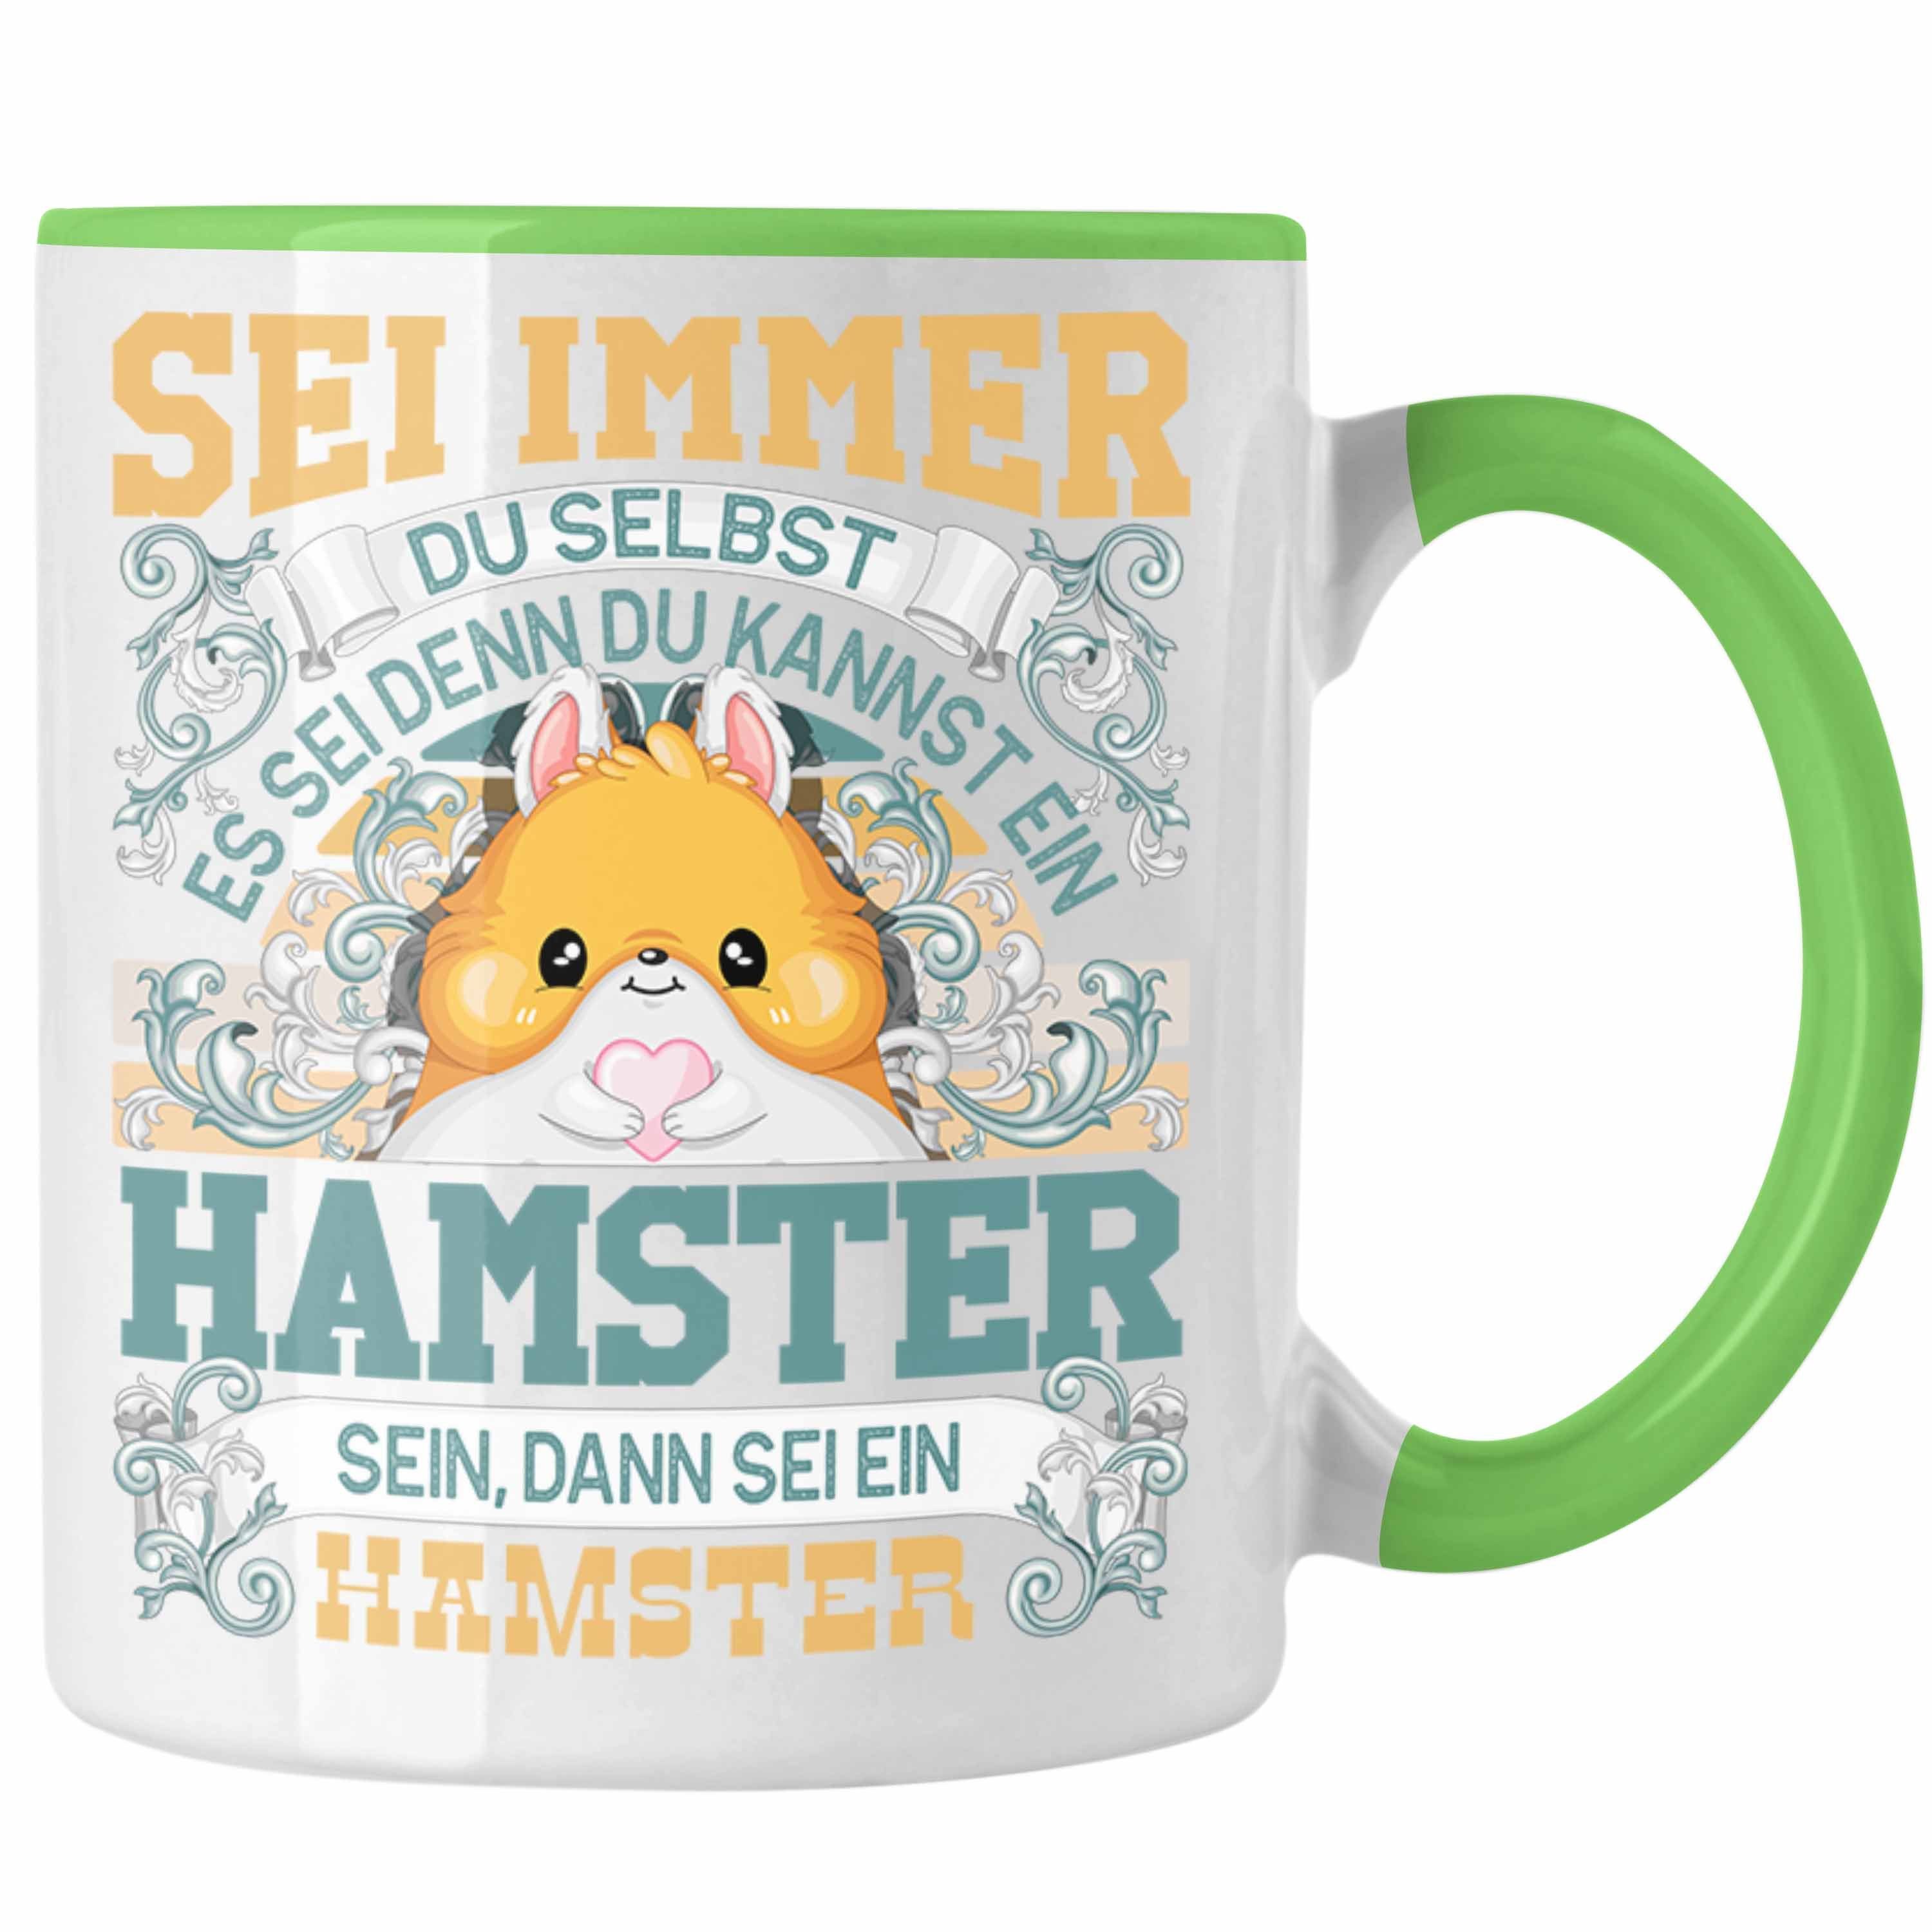 Trendation Tasse Hamster Tasse Geschenk Hamster Liebhaber Sei immer Du Selbst Spruch Grün